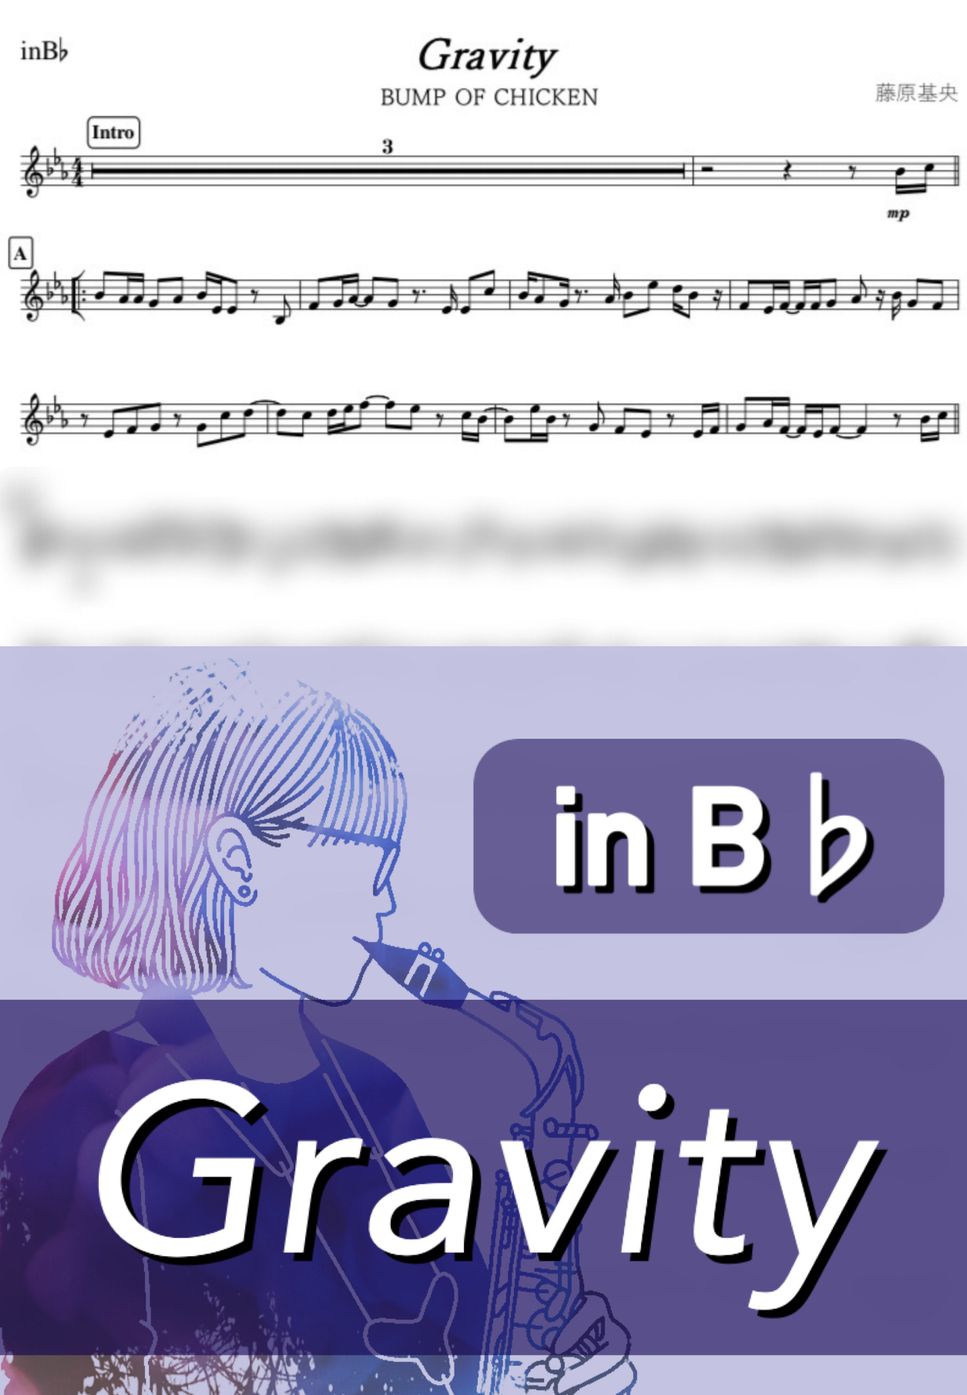 BUMP OF CHICKEN - Gravity (B♭) by kanamusic